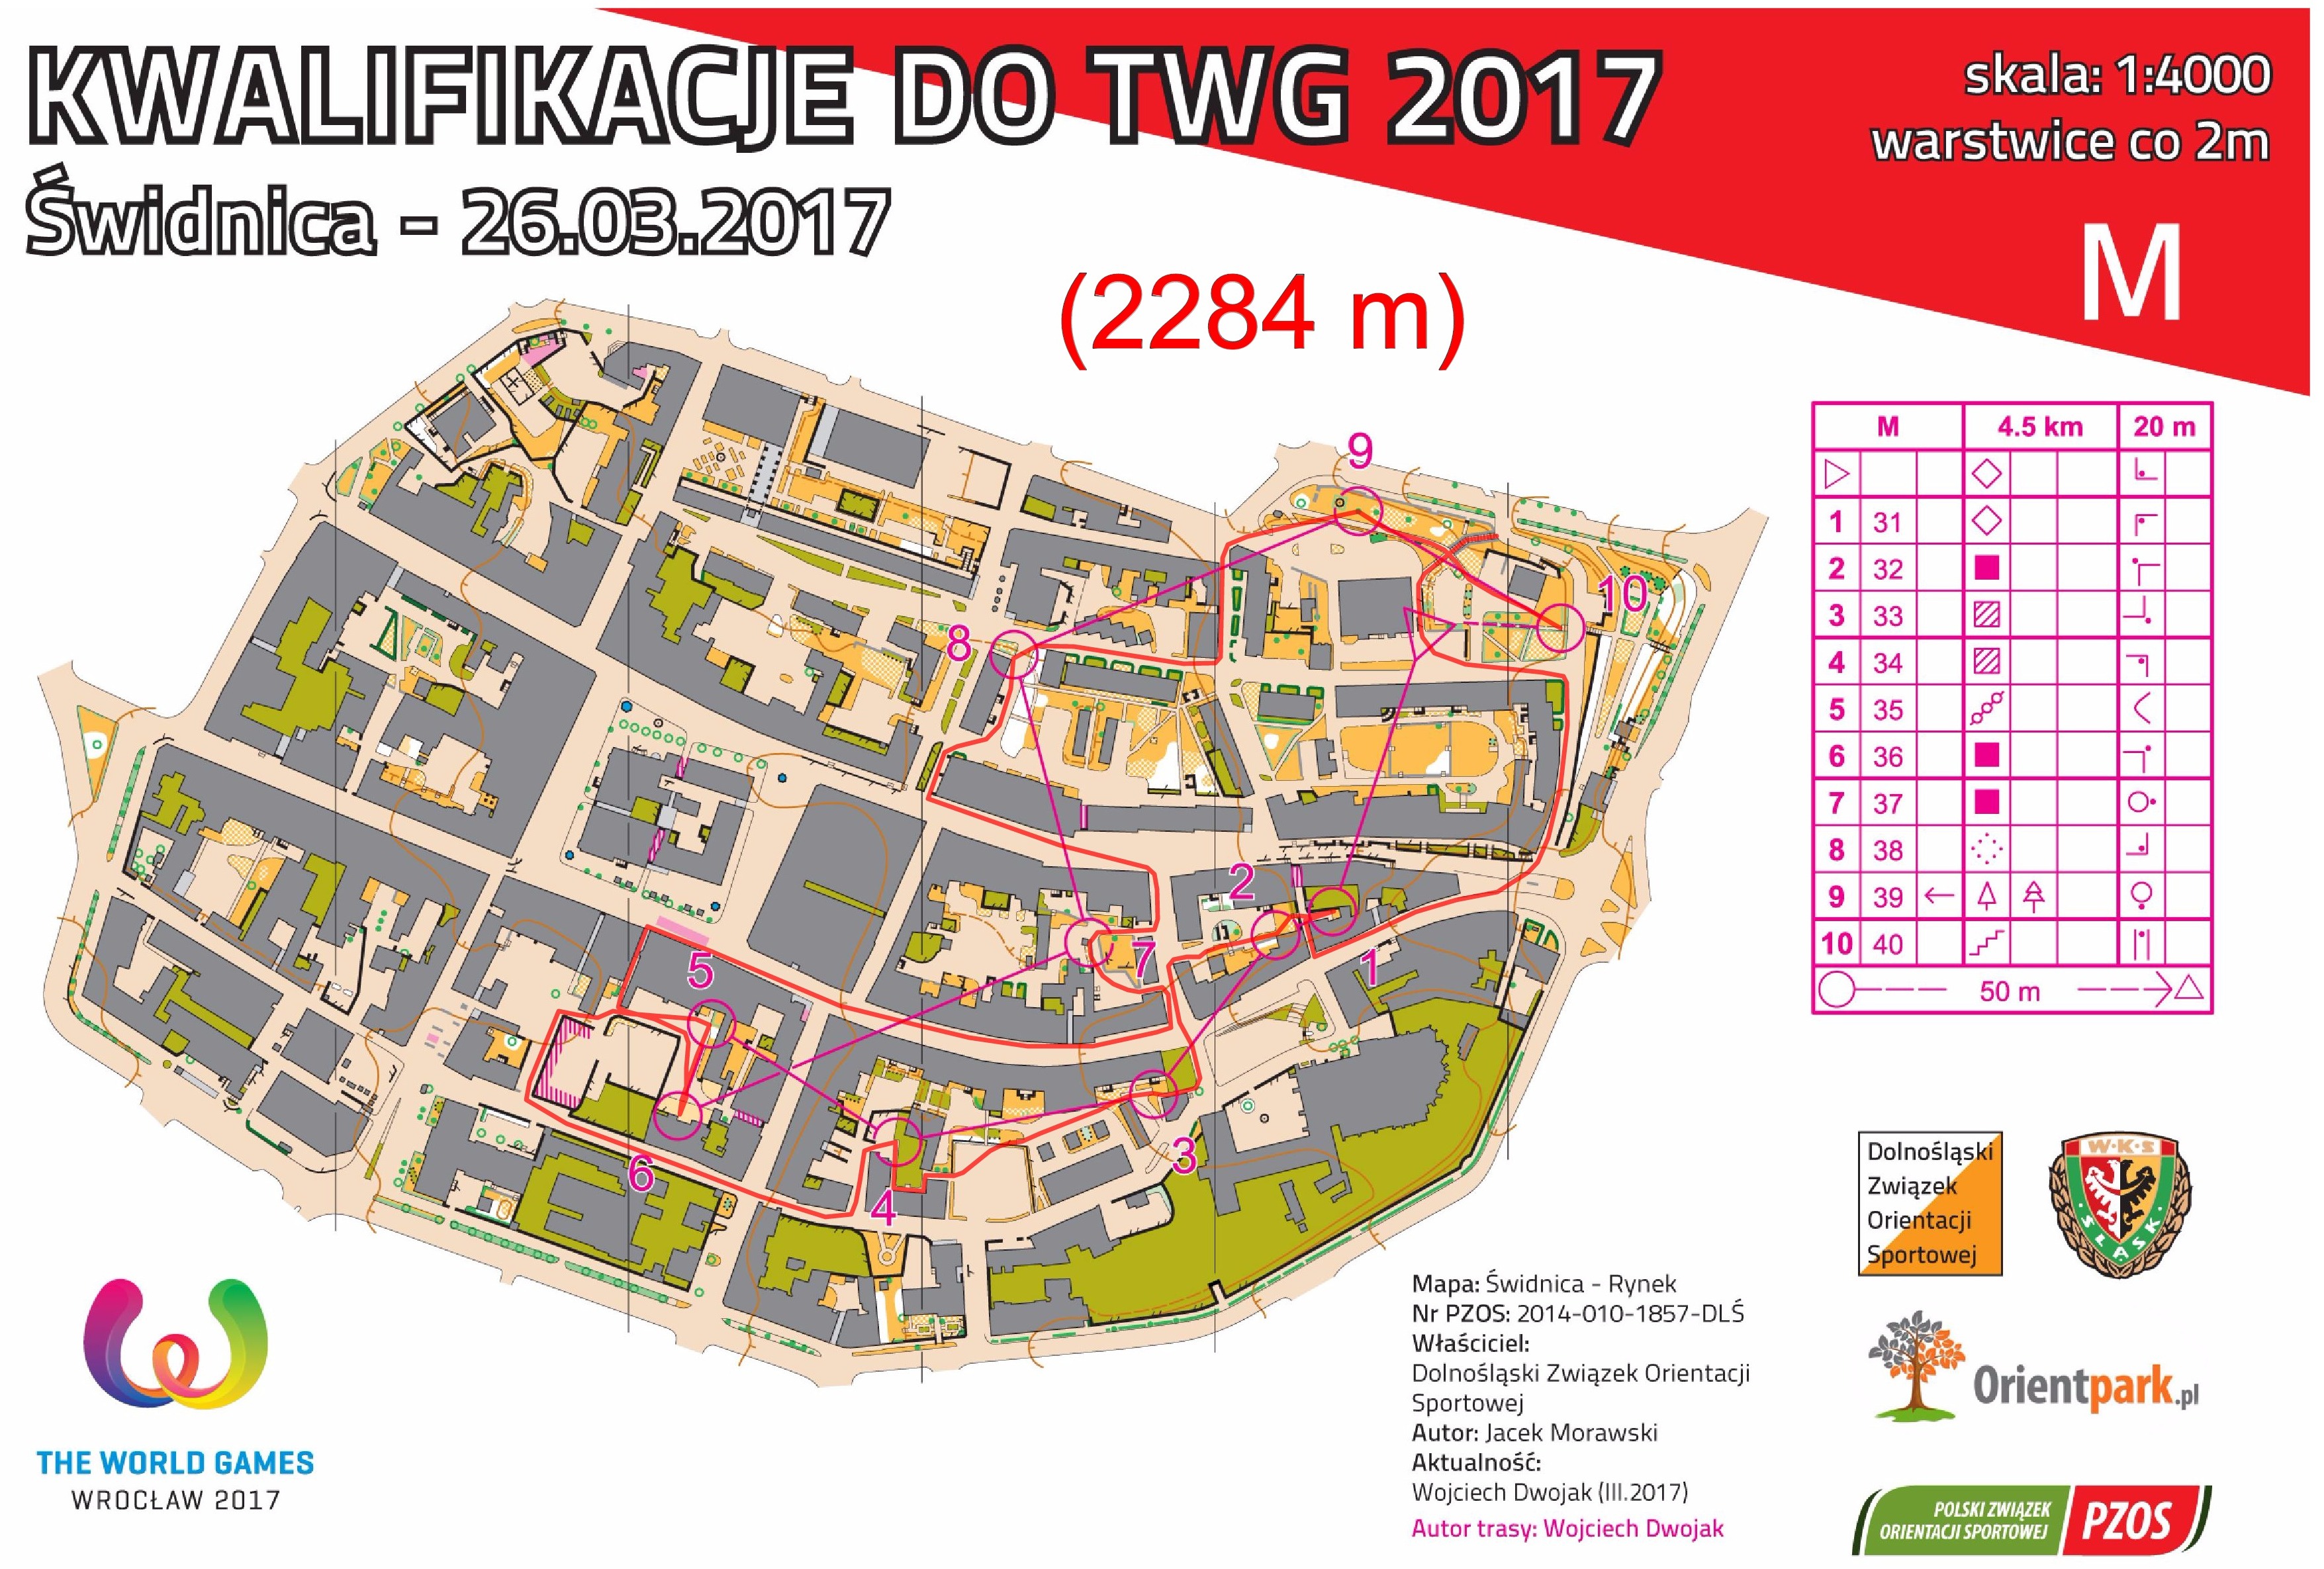 kwalifikacje do TWG - sprint #2, cz. I (26-03-2017)